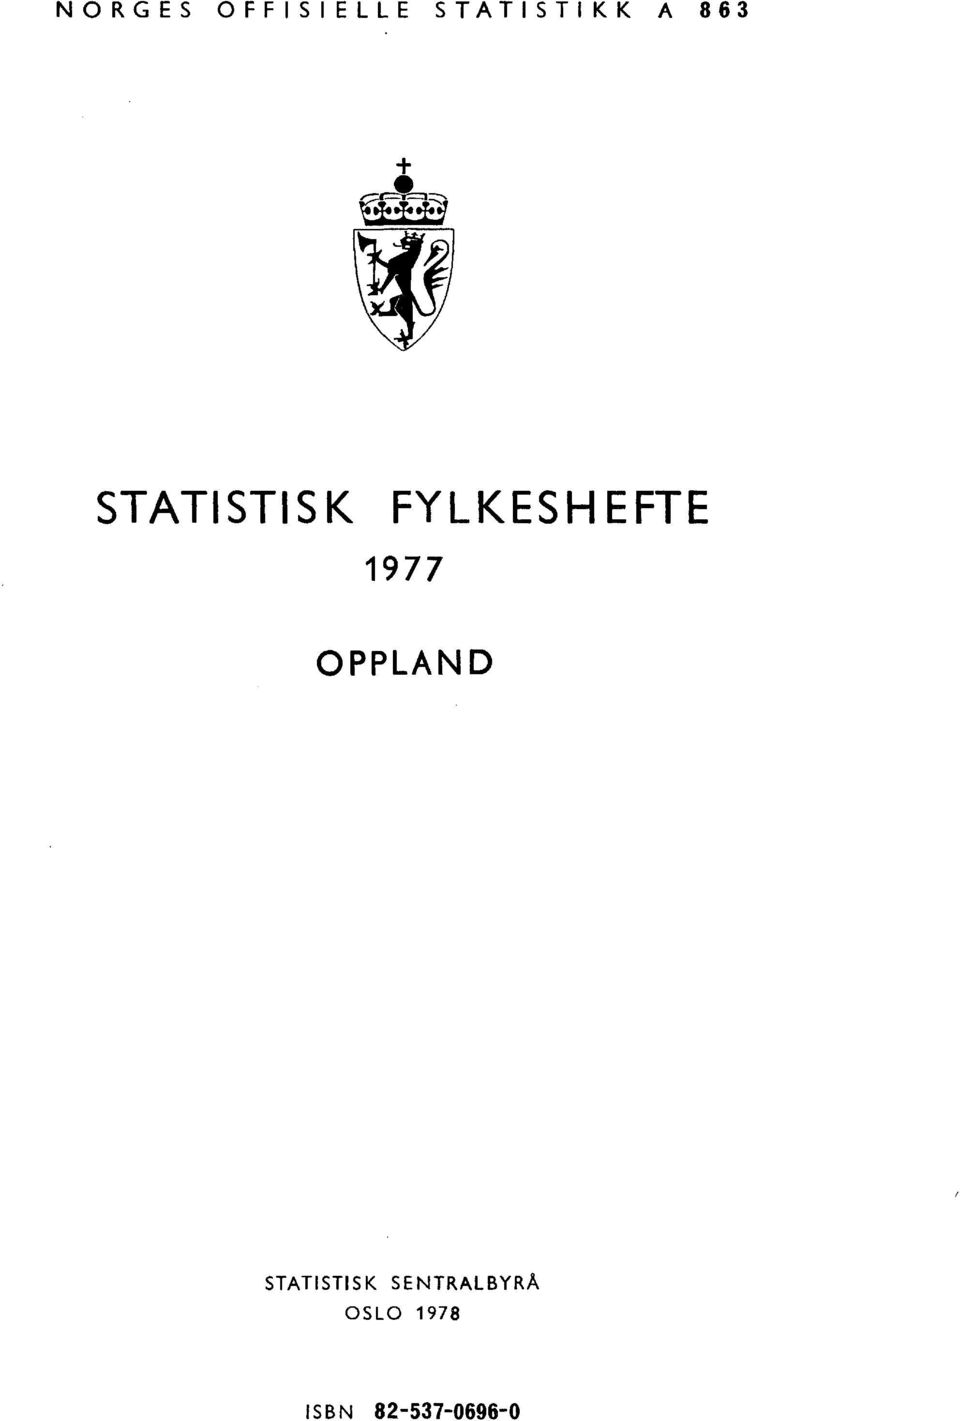 1977 OPPLAND STATISTISK